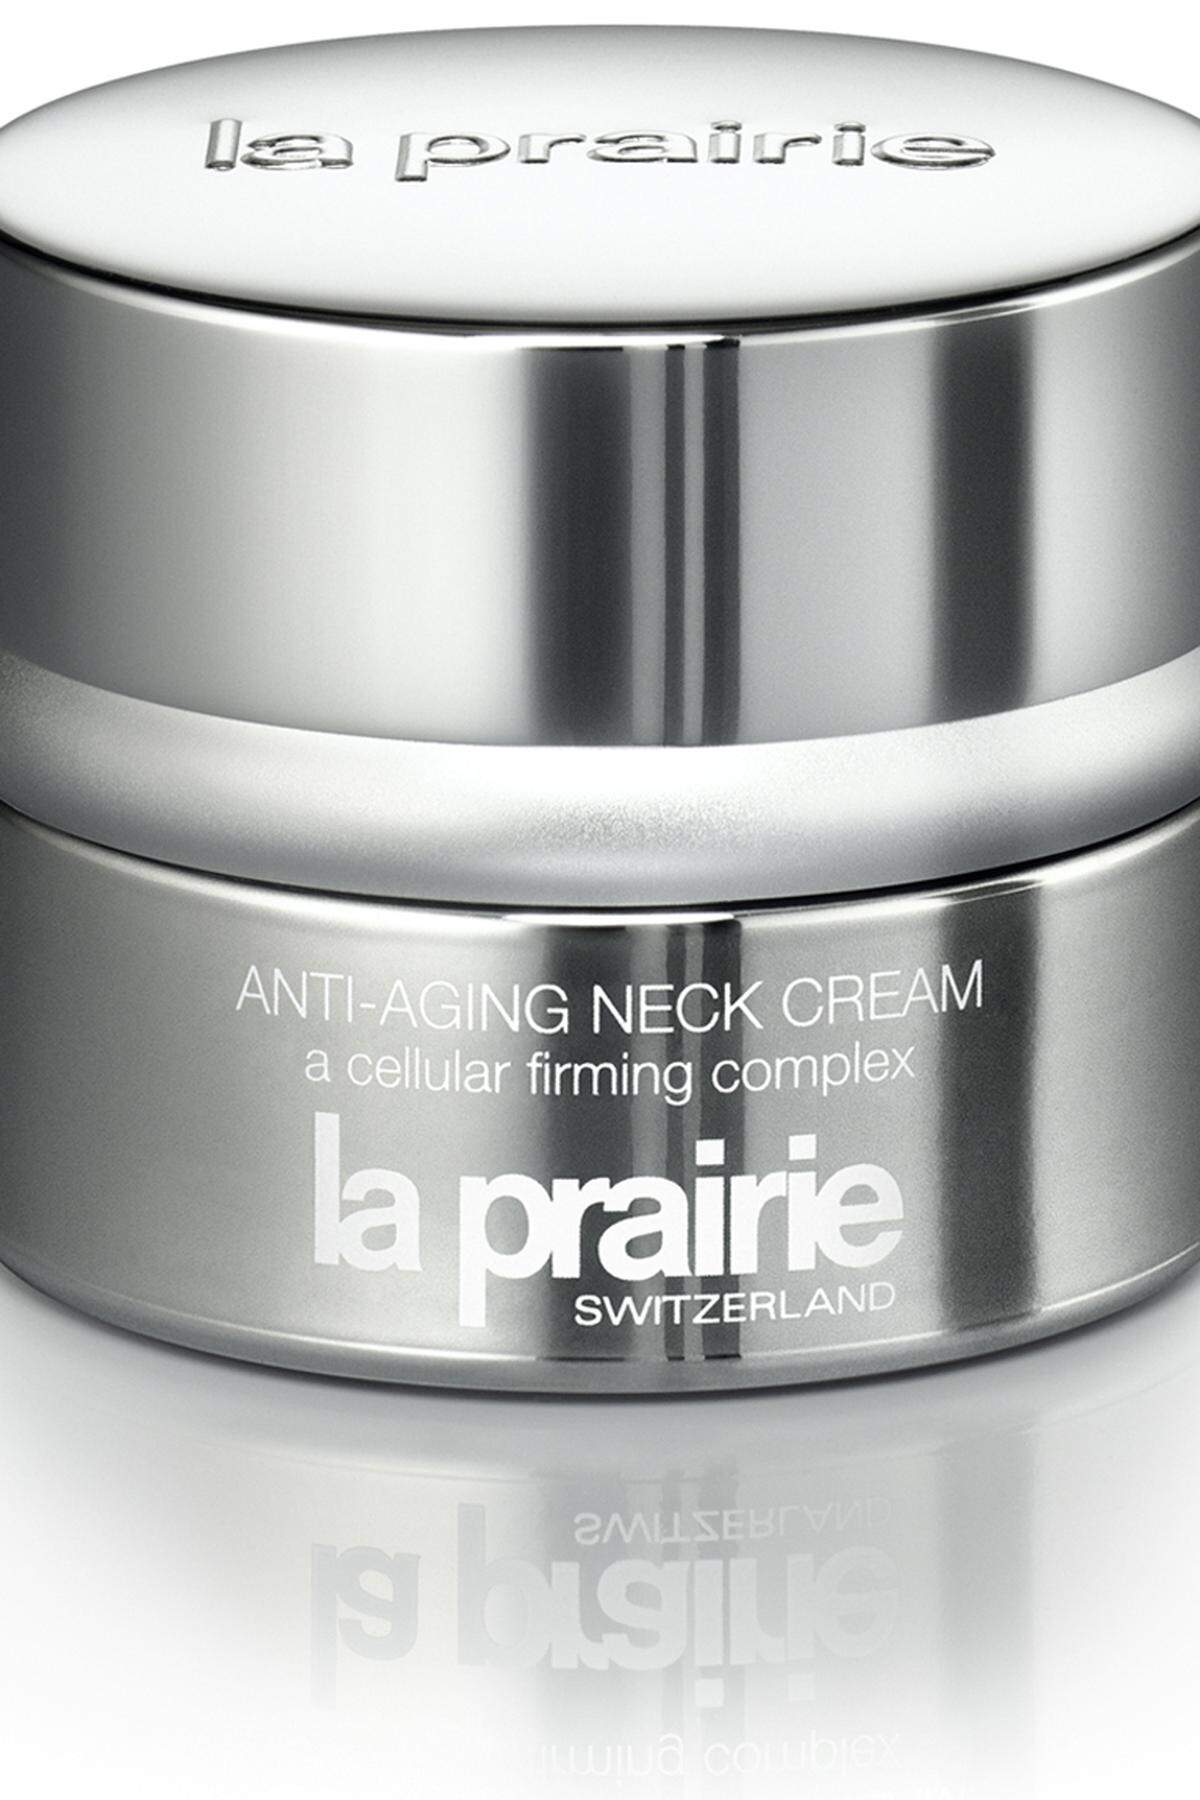 Ebenfalls praktisch: Die Anti-Aging Neck Cream von La Prairie soll für ein schönes Dekolleté sorgen.